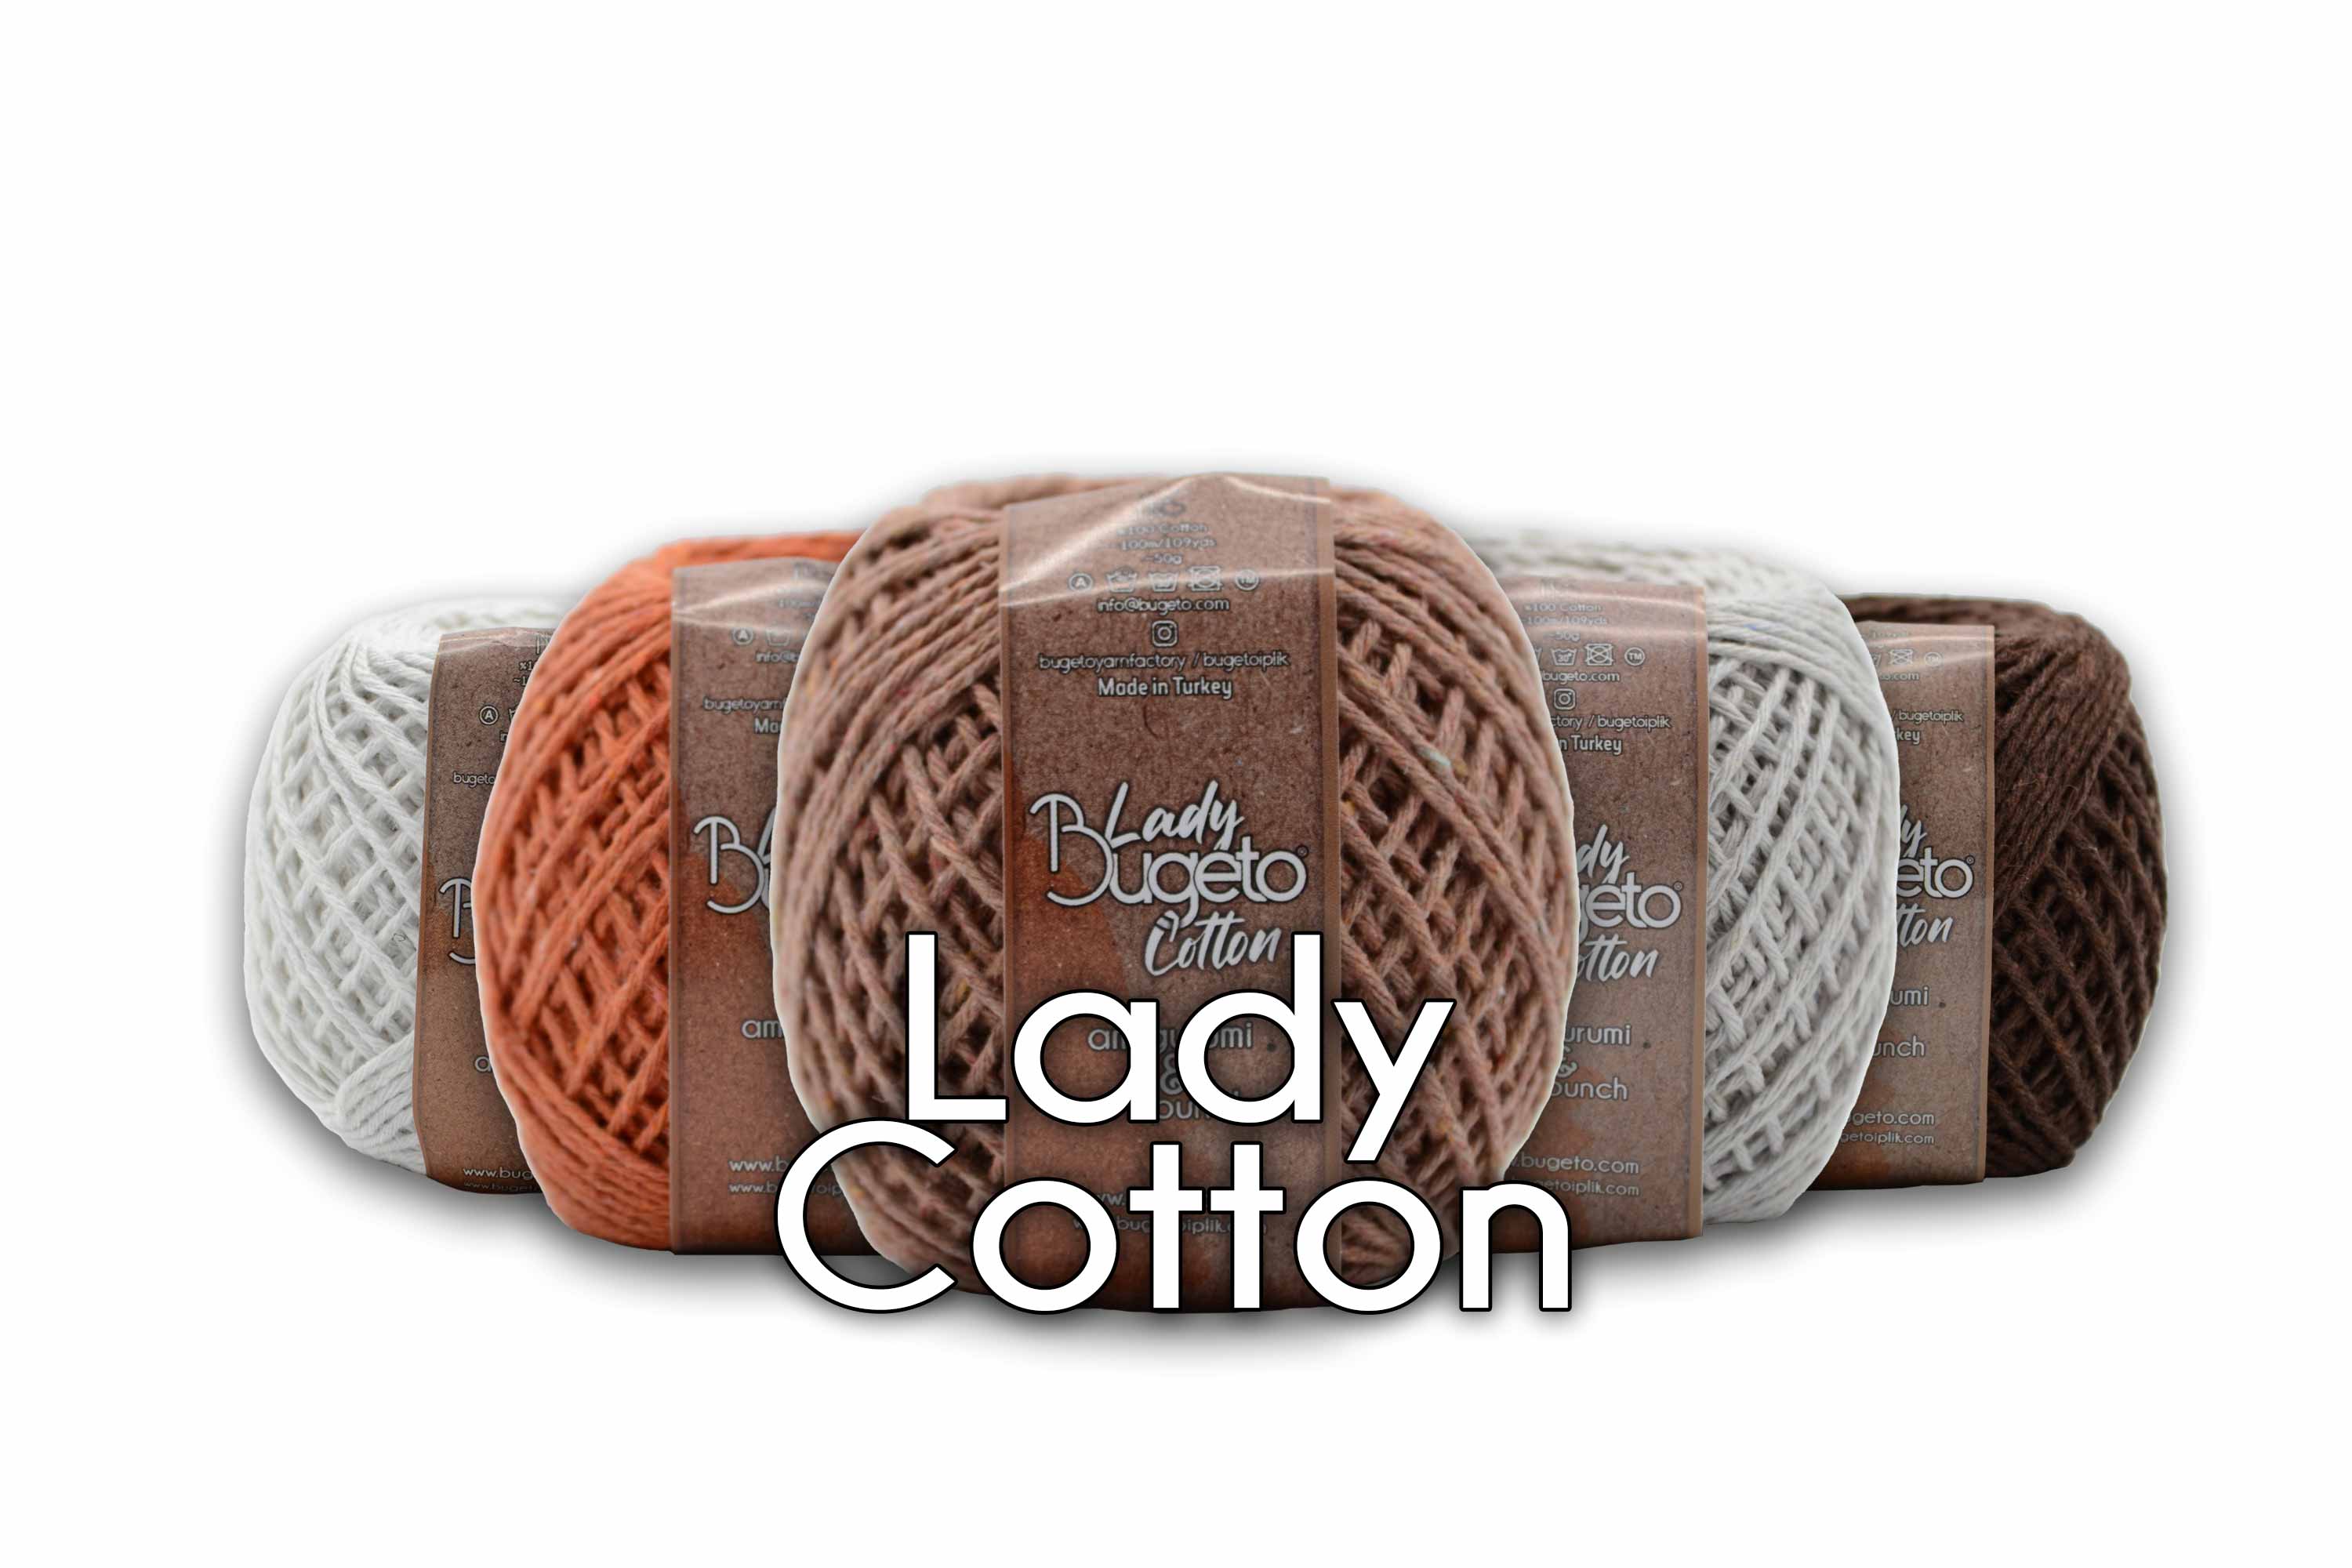 cotton lady yarns  lady cotton twist yarn bugeto yarn